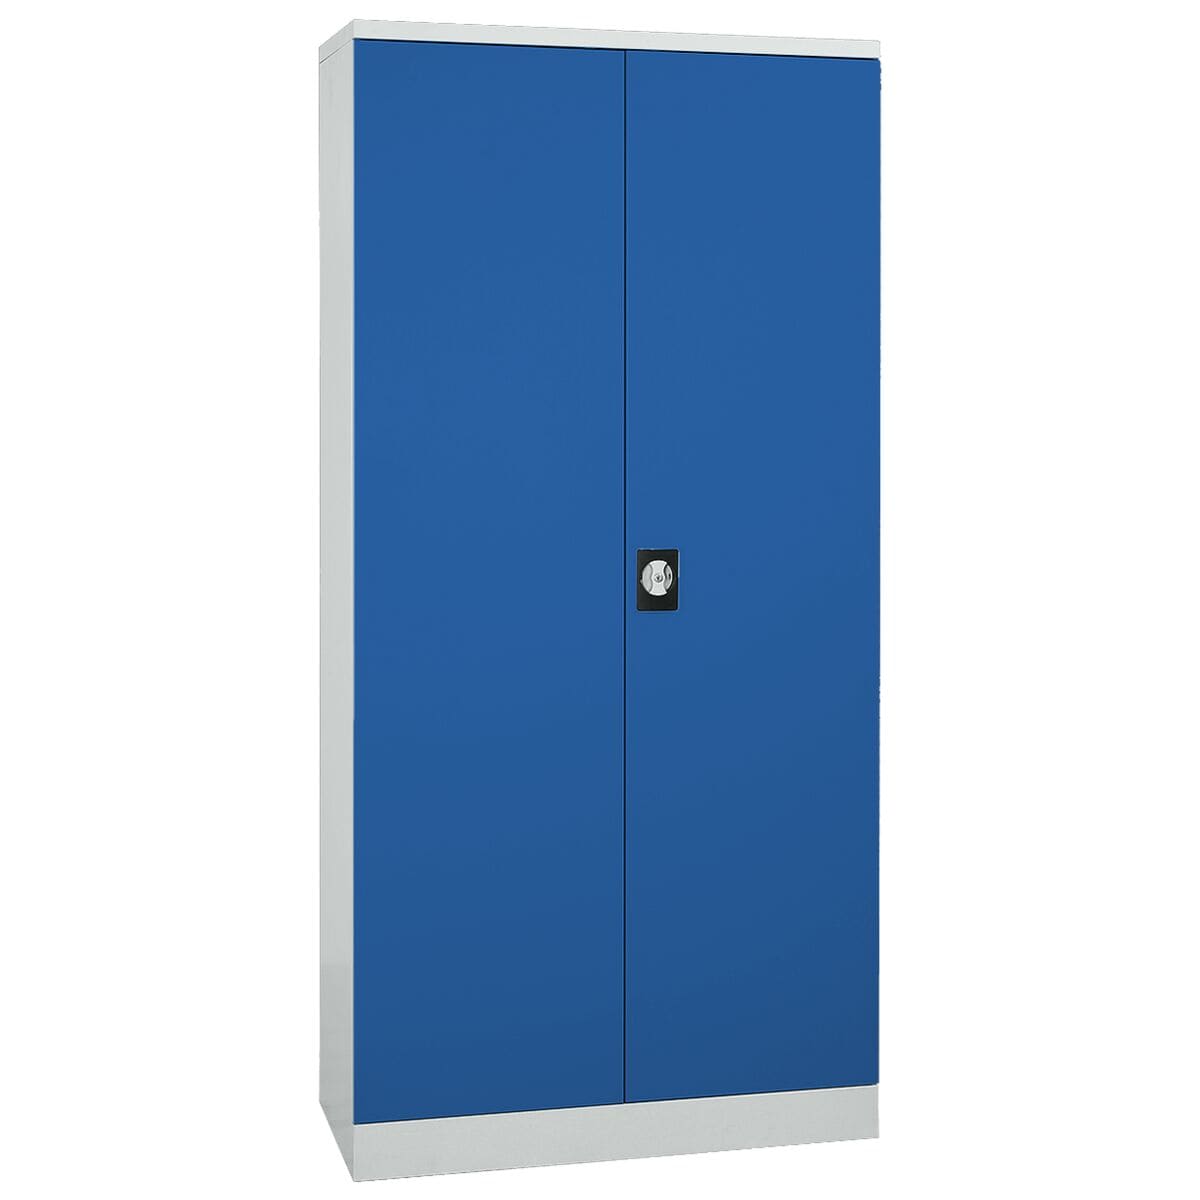 Gürkan Stahlschrank blau abschließbar, 92 x 195 cm, Flügeltür